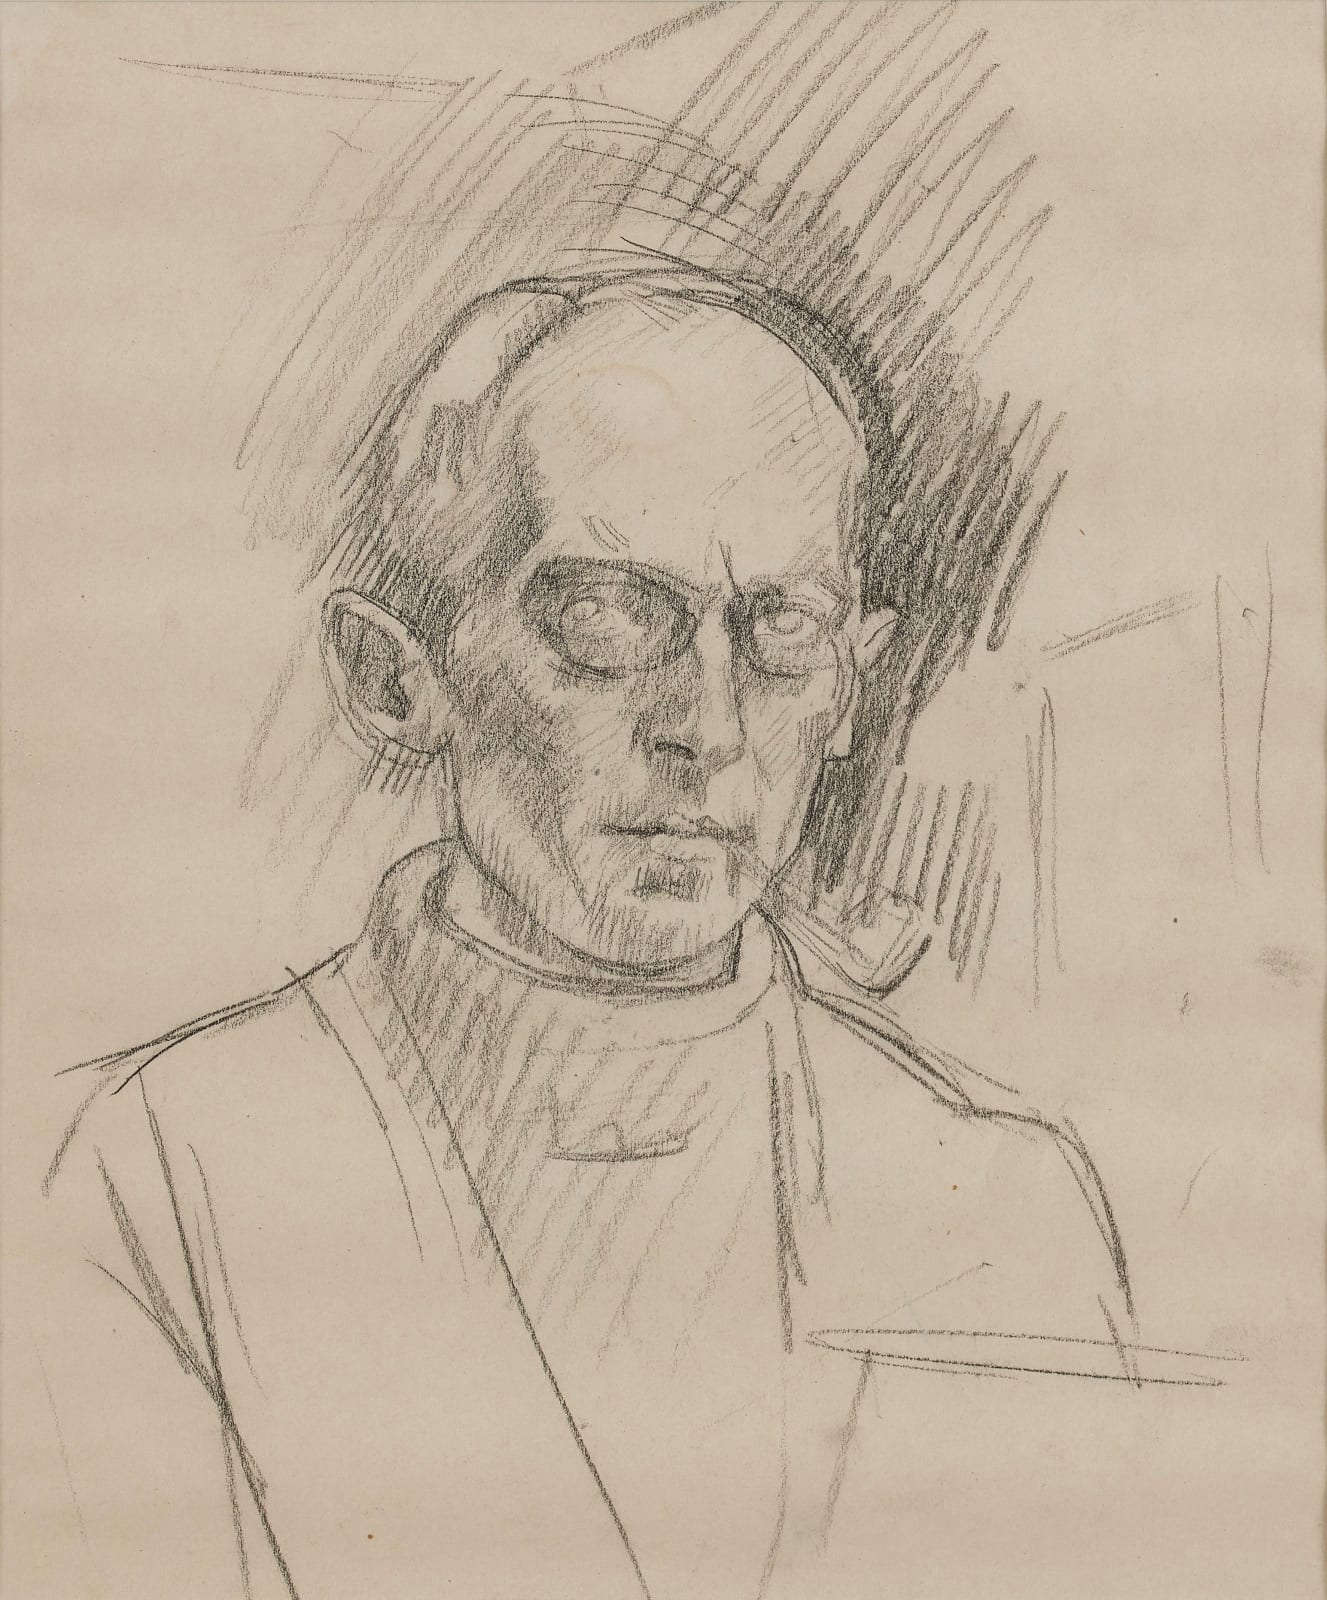 S J Peploe, Self Portrait, circa 1916